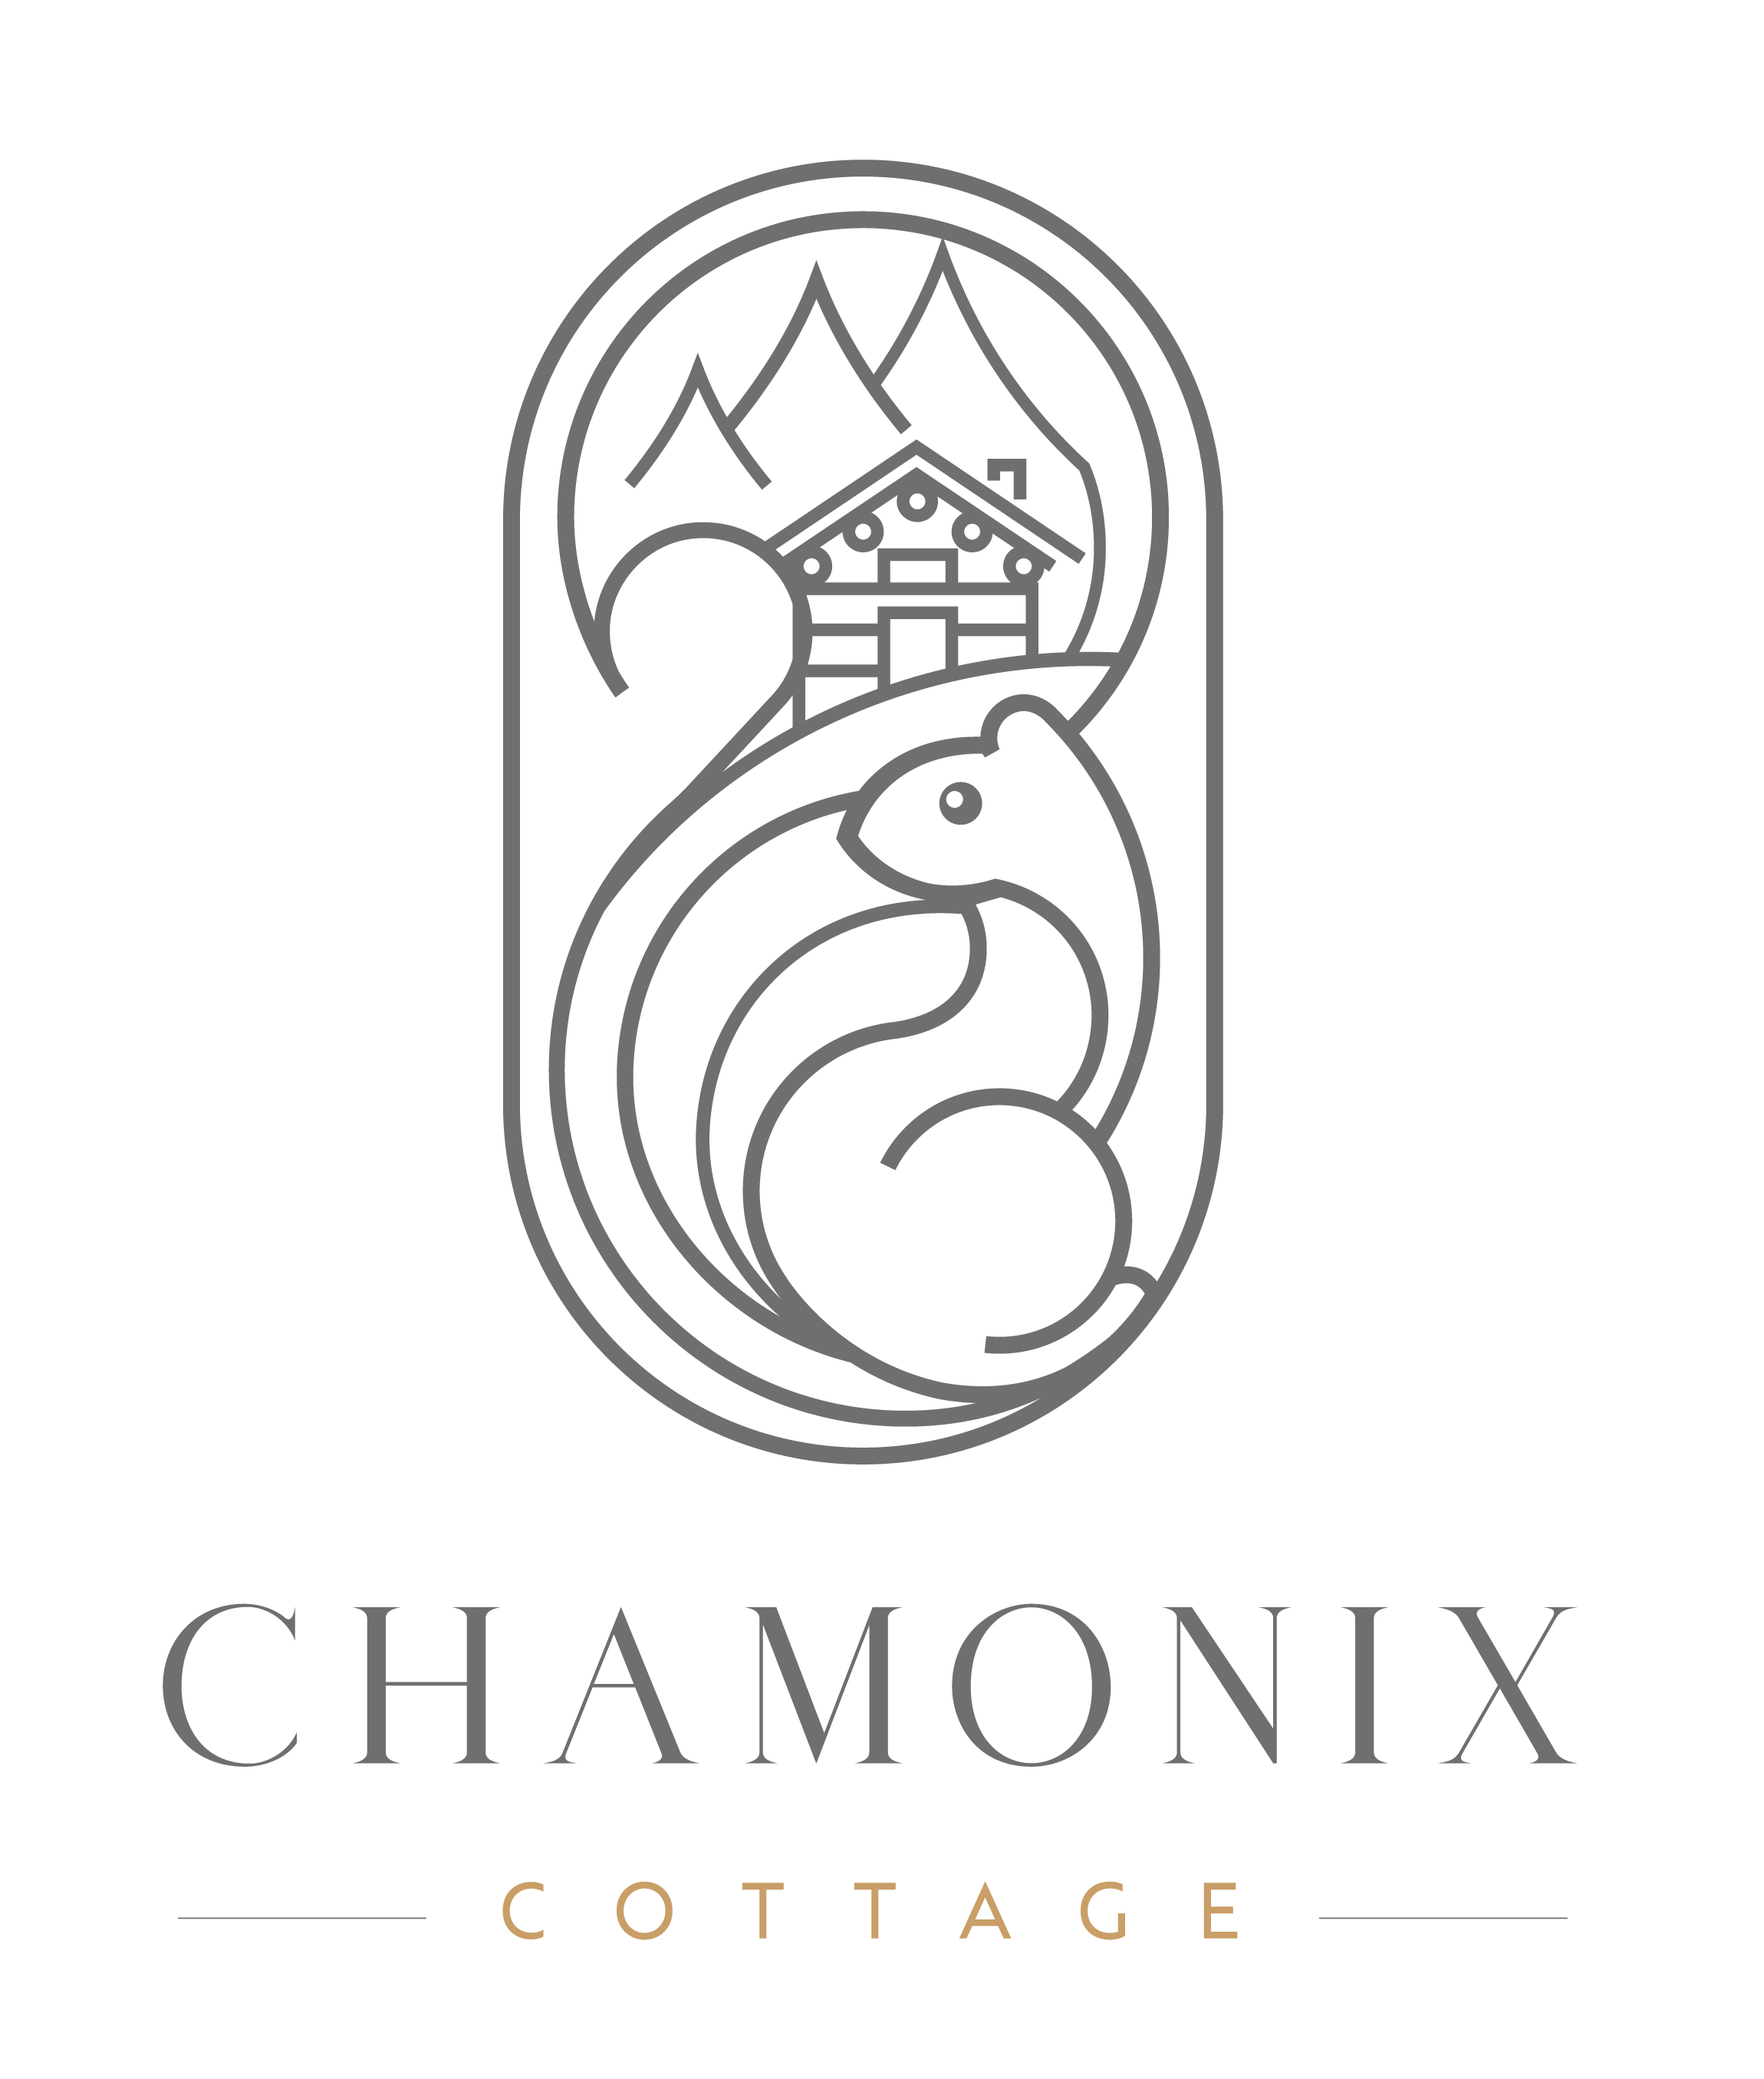 Chamonix Cottage | Contactez nous - Accès - Chamonix Cottage